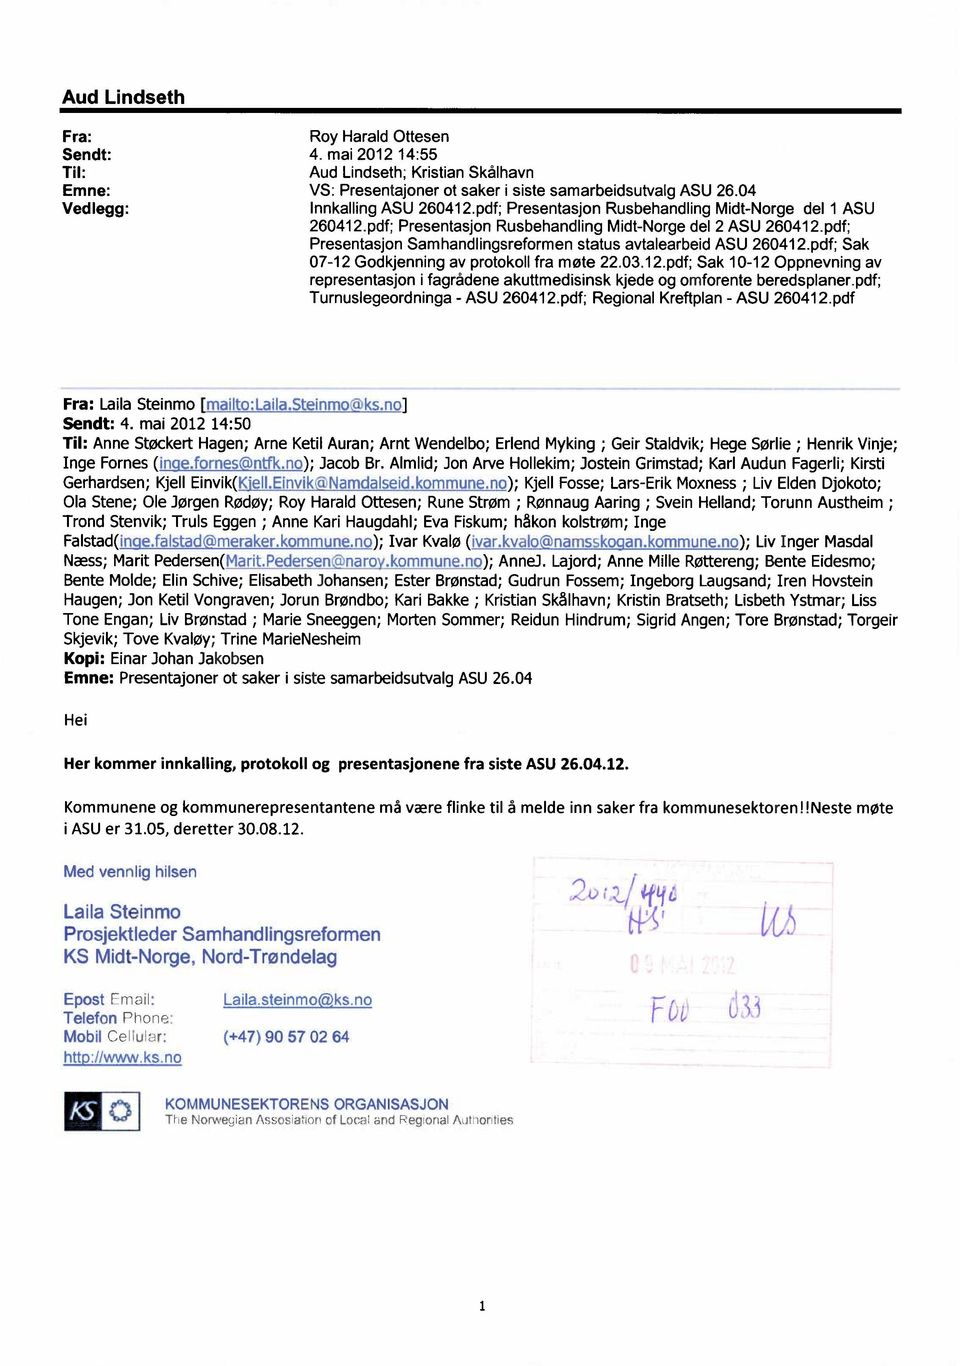 pdf; Sak 07-12 Godkjenning av protokoll fra møte 22.03.12.pdf; Sak 10-12 Oppnevning av representasjon i fagrådene akuttmedisinsk kjede og omforente beredsplaner.pdf; Turnuslegeordninga - ASU 260412.